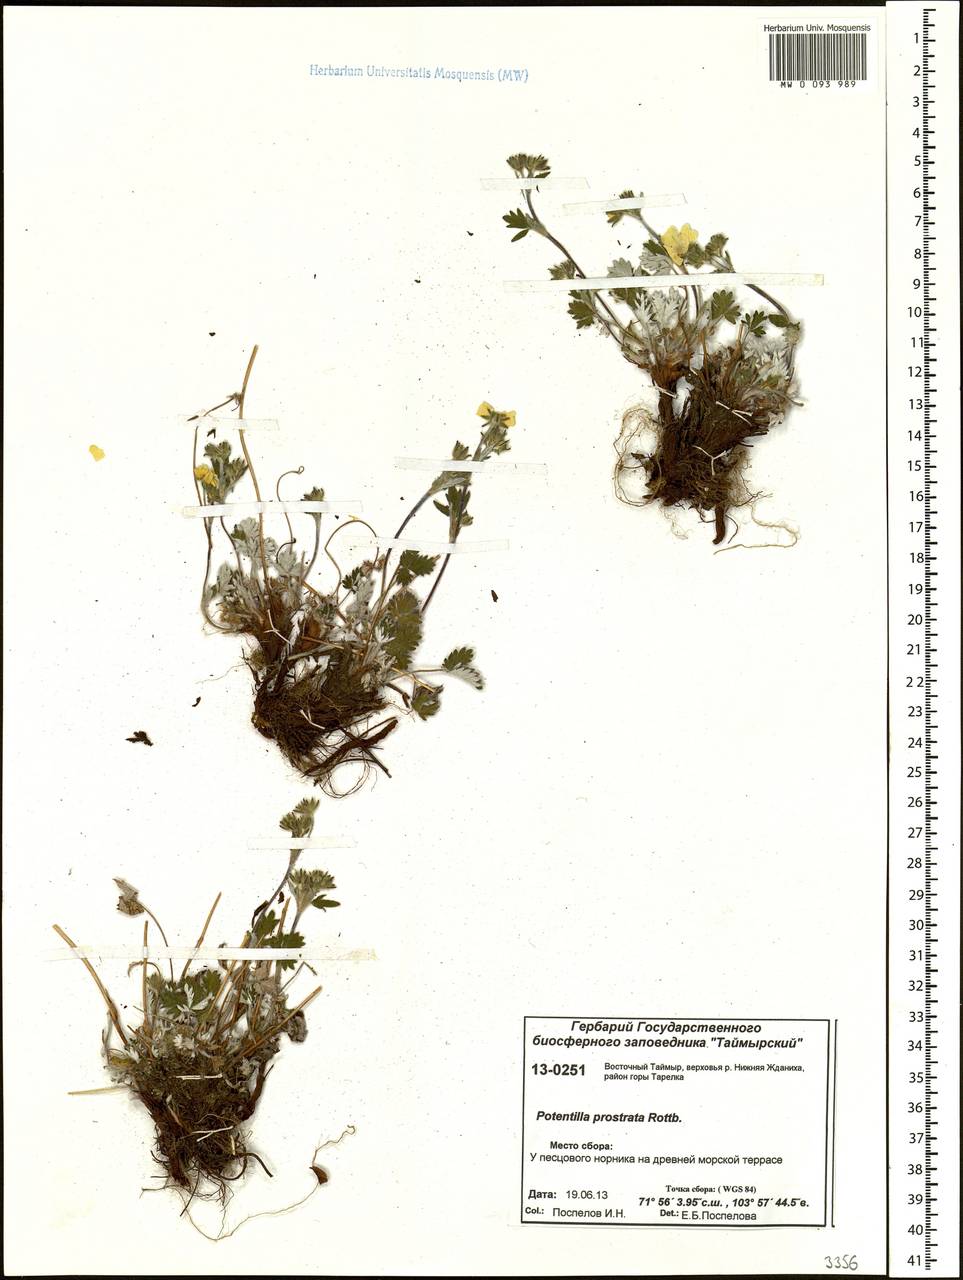 Potentilla ×prostrata Rottb., Siberia, Central Siberia (S3) (Russia)